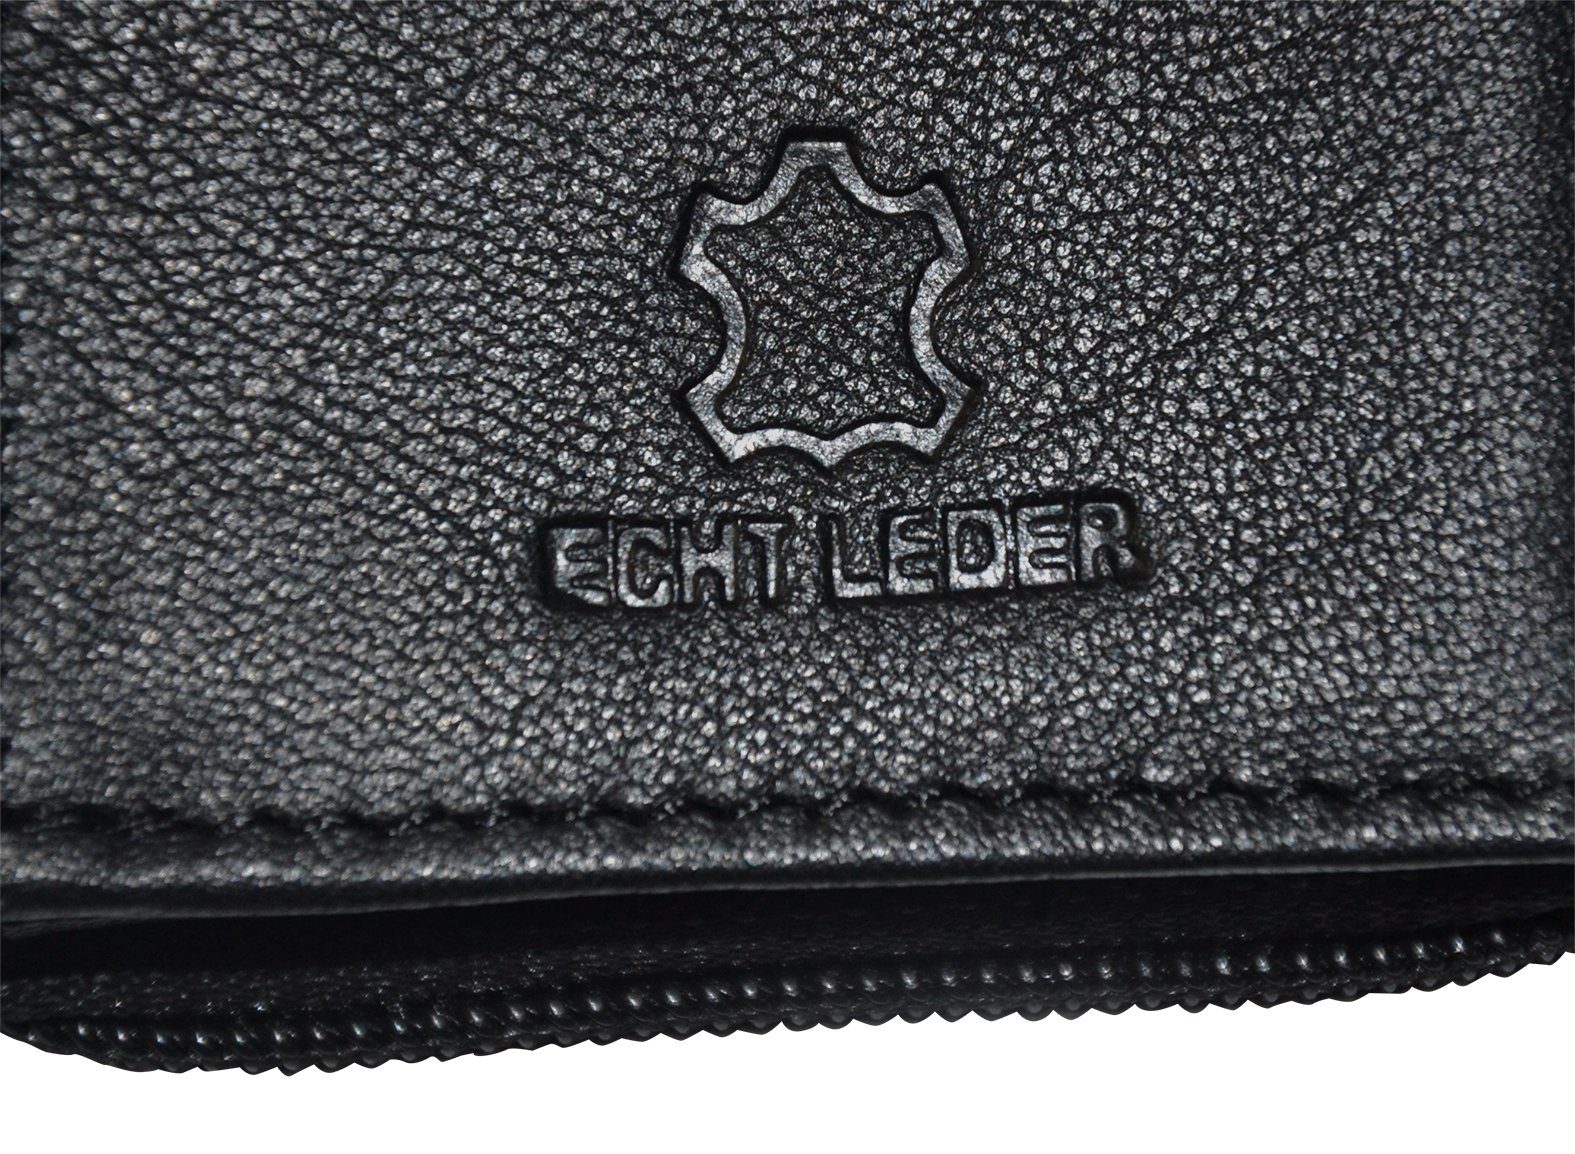 Goodman Design Leder Leder Walled Geldbörse Brieftasche Portmonnaie, Echt Geldbeutel